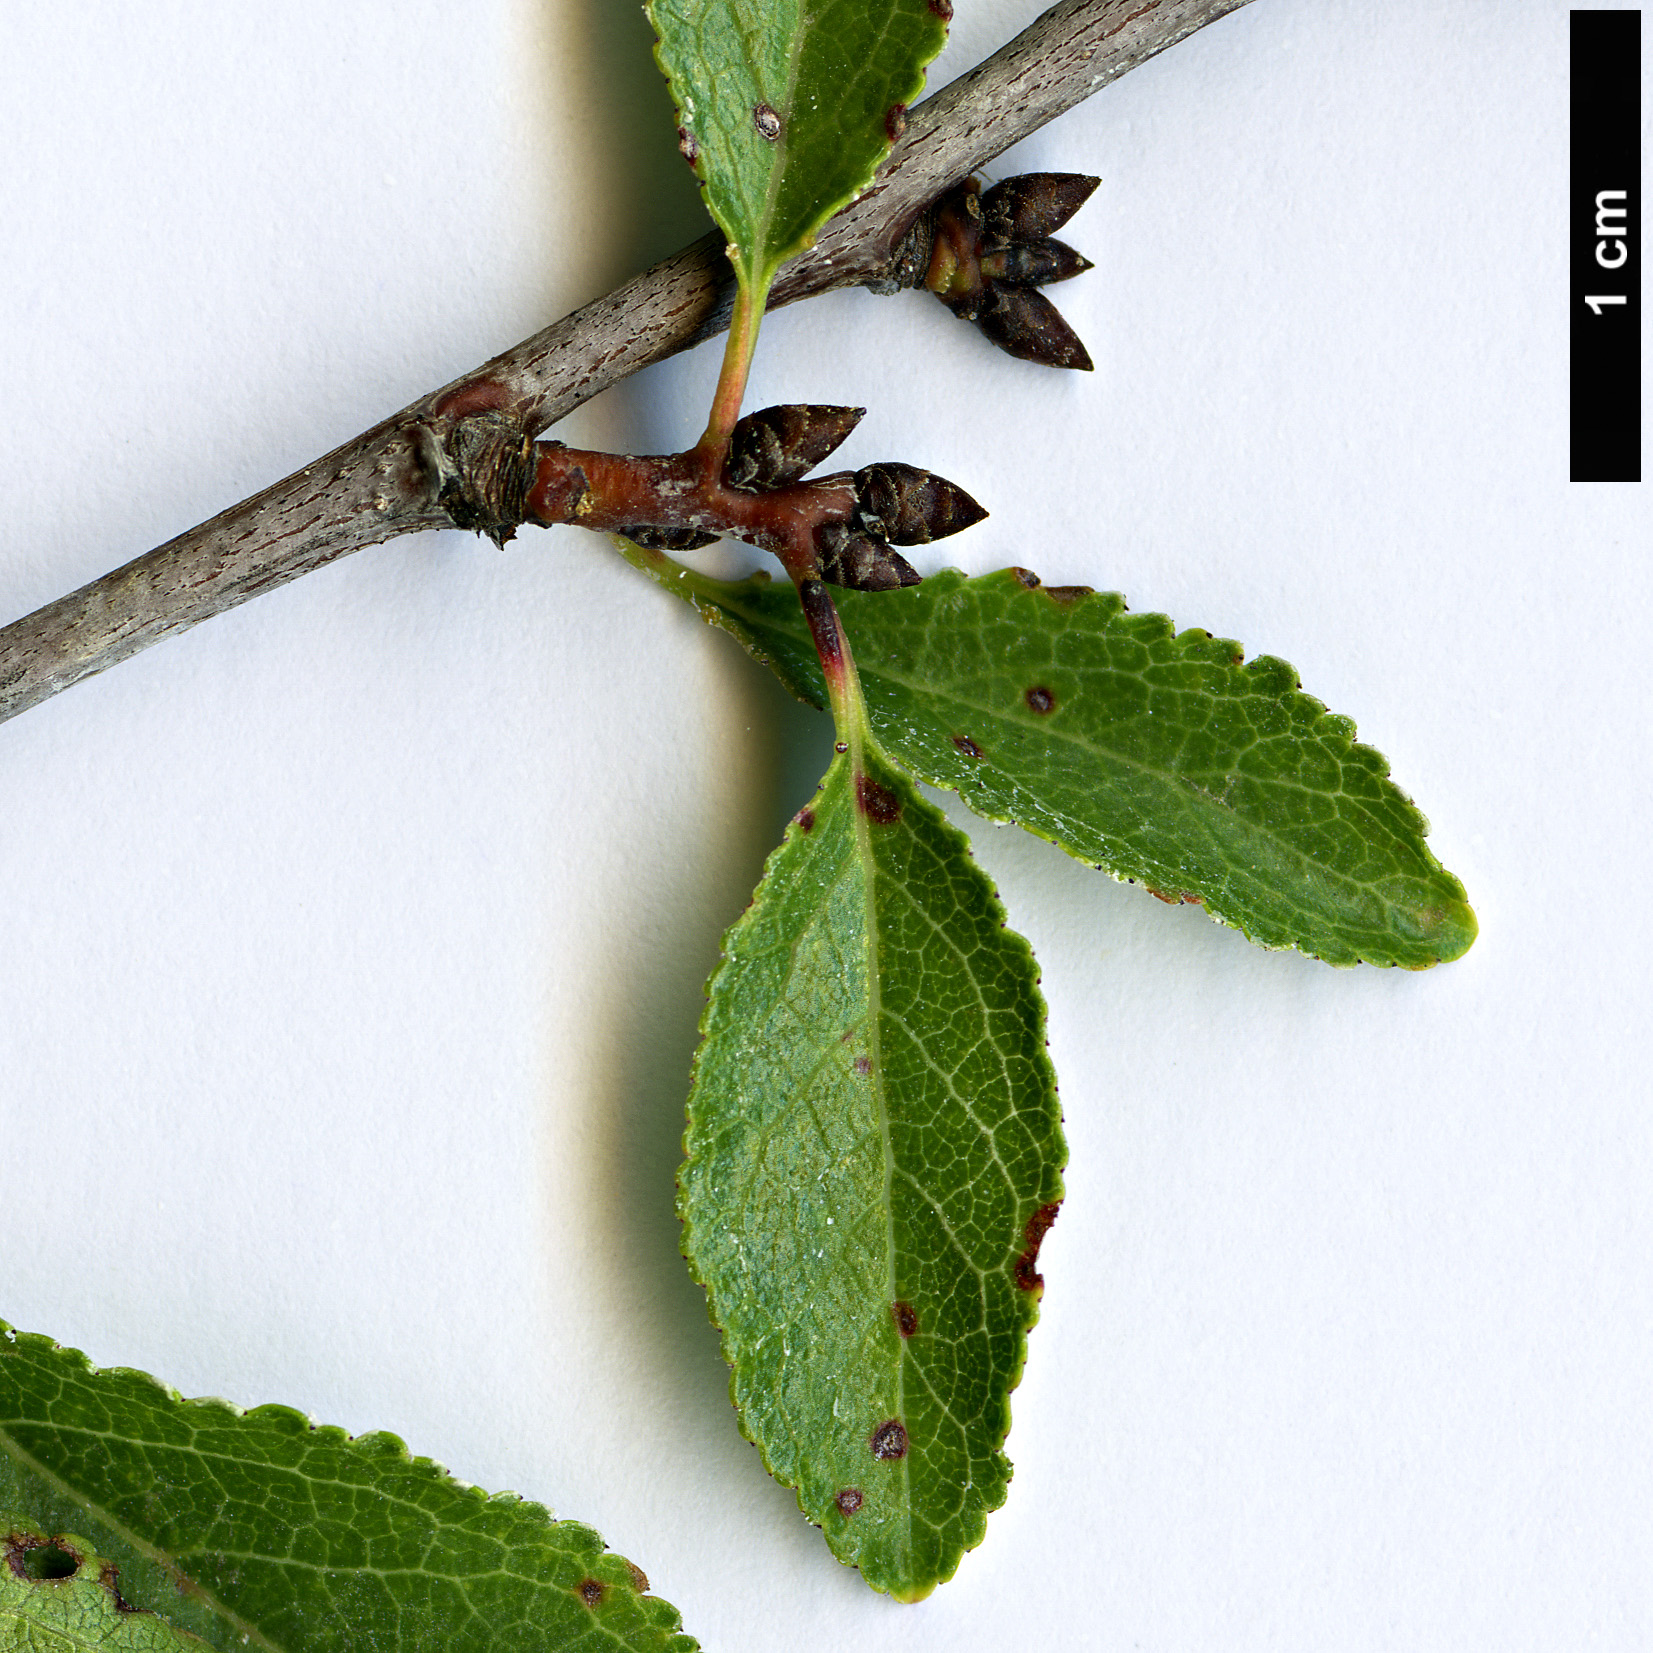 High resolution image: Family: Rosaceae - Genus: Prunus - Taxon: cocomilia